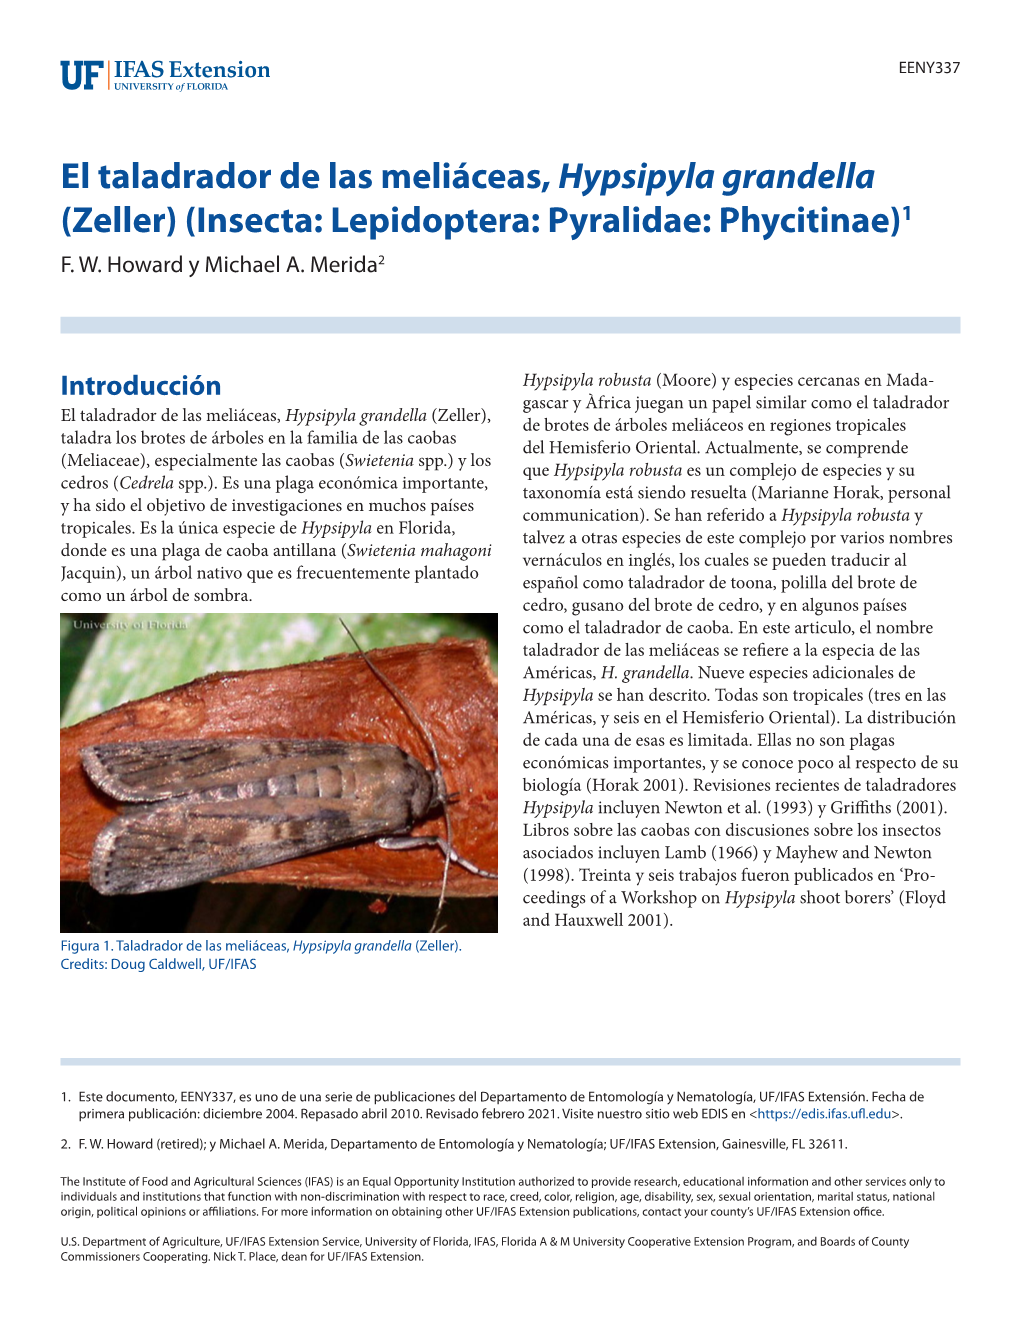 El Taladrador De Las Meliáceas, Hypsipyla Grandella (Zeller) (Insecta: Lepidoptera: Pyralidae: Phycitinae)1 F